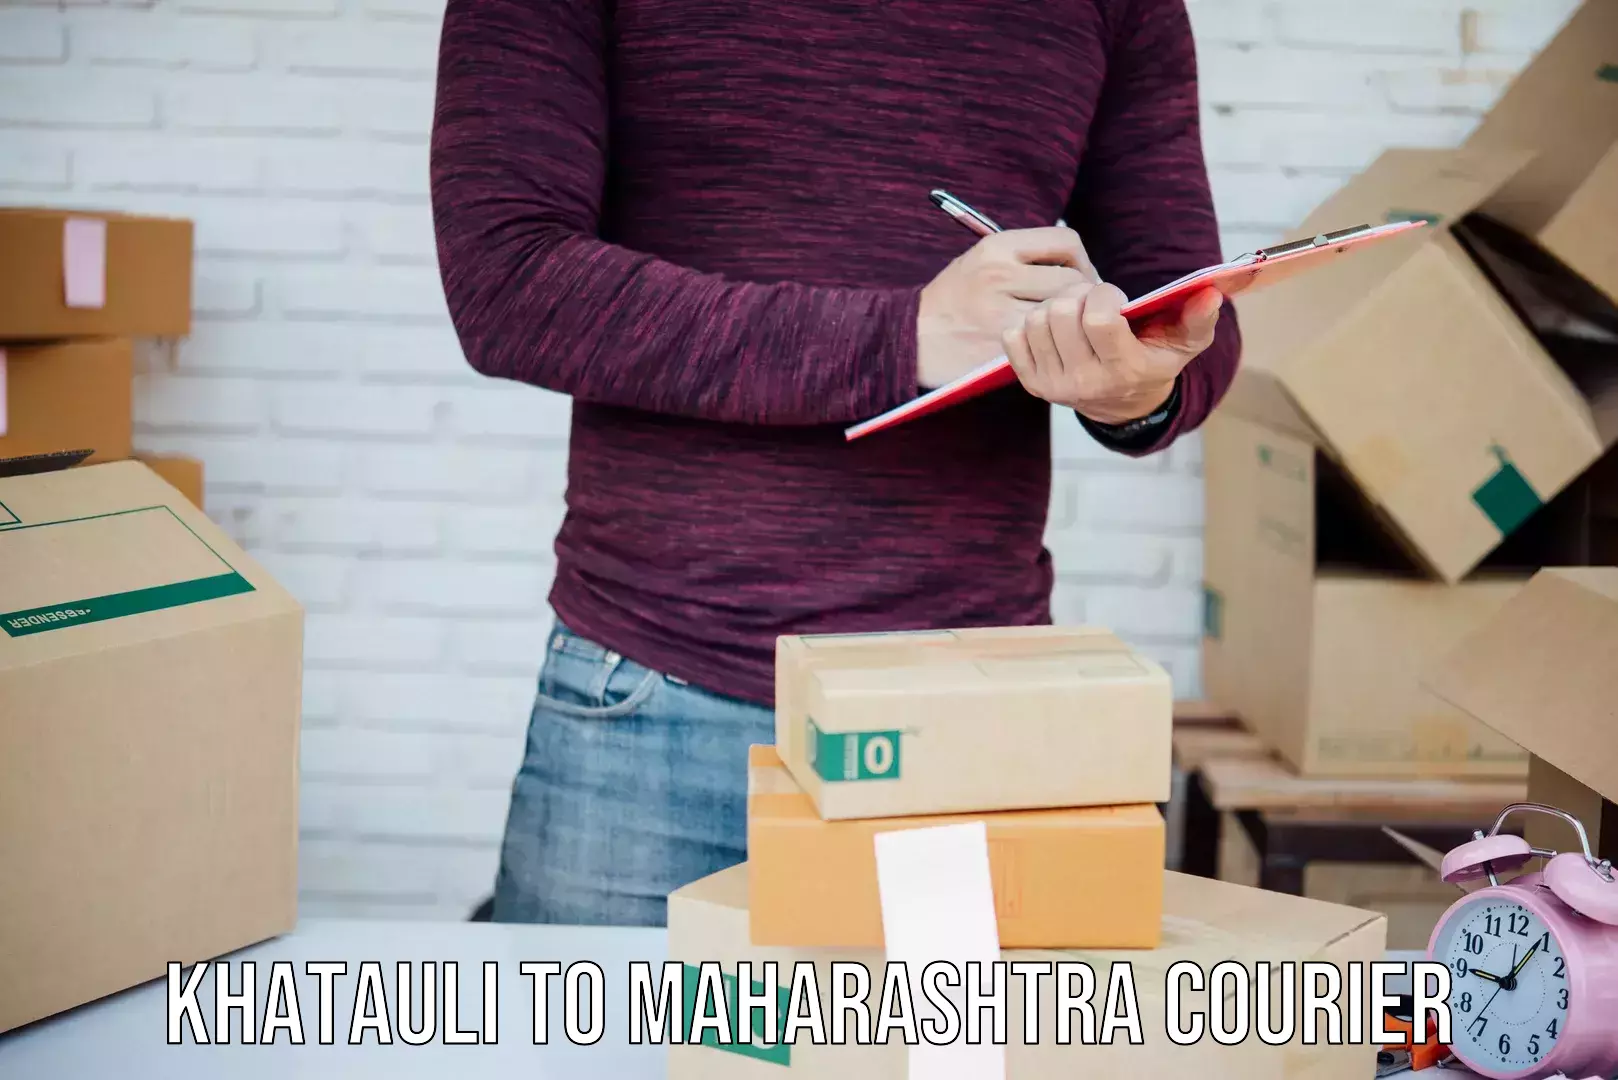 Innovative shipping solutions Khatauli to Maharashtra